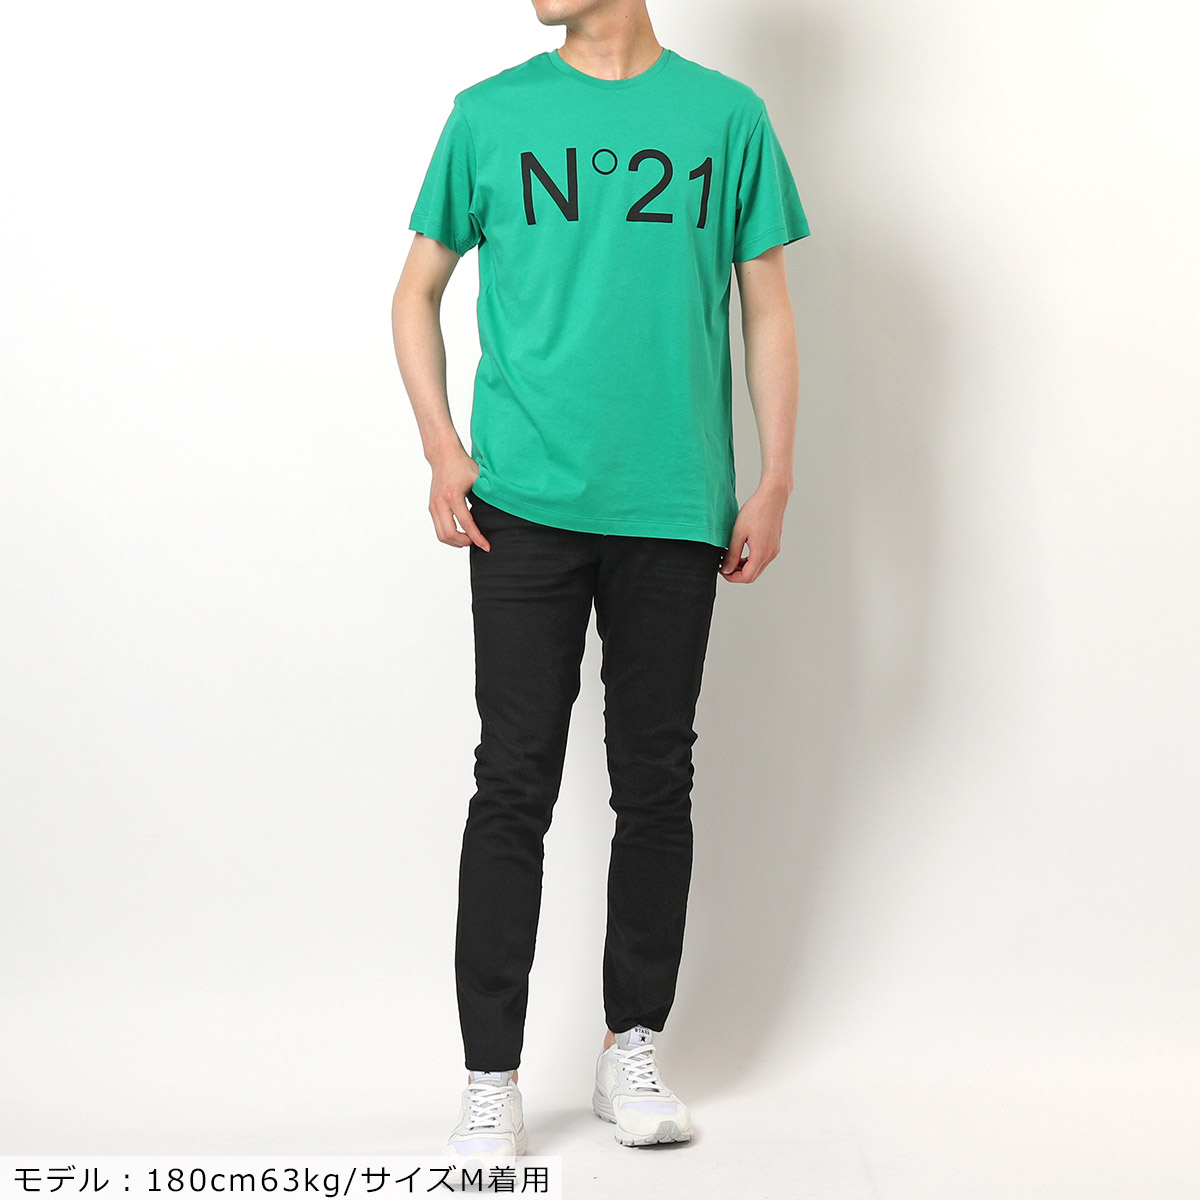 N°21 ヌメロ ヴェントゥーノ F021 6332 6317 カラー4色 半袖 Tシャツ クルーネック カットソー ロゴT メンズ |  インポートセレクト musee